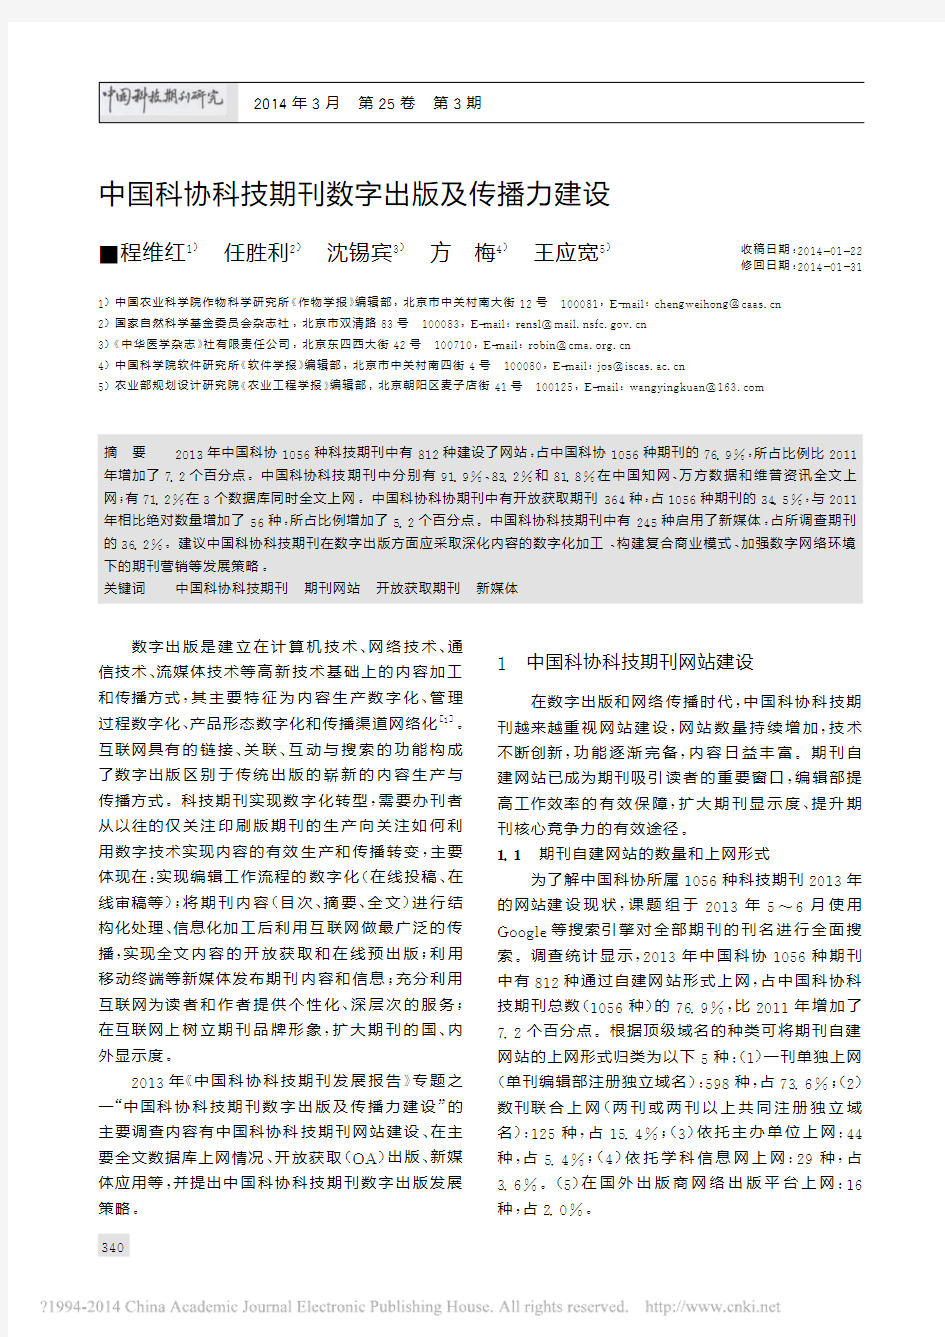 中国科协科技期刊数字出版及传播力建设_程维红